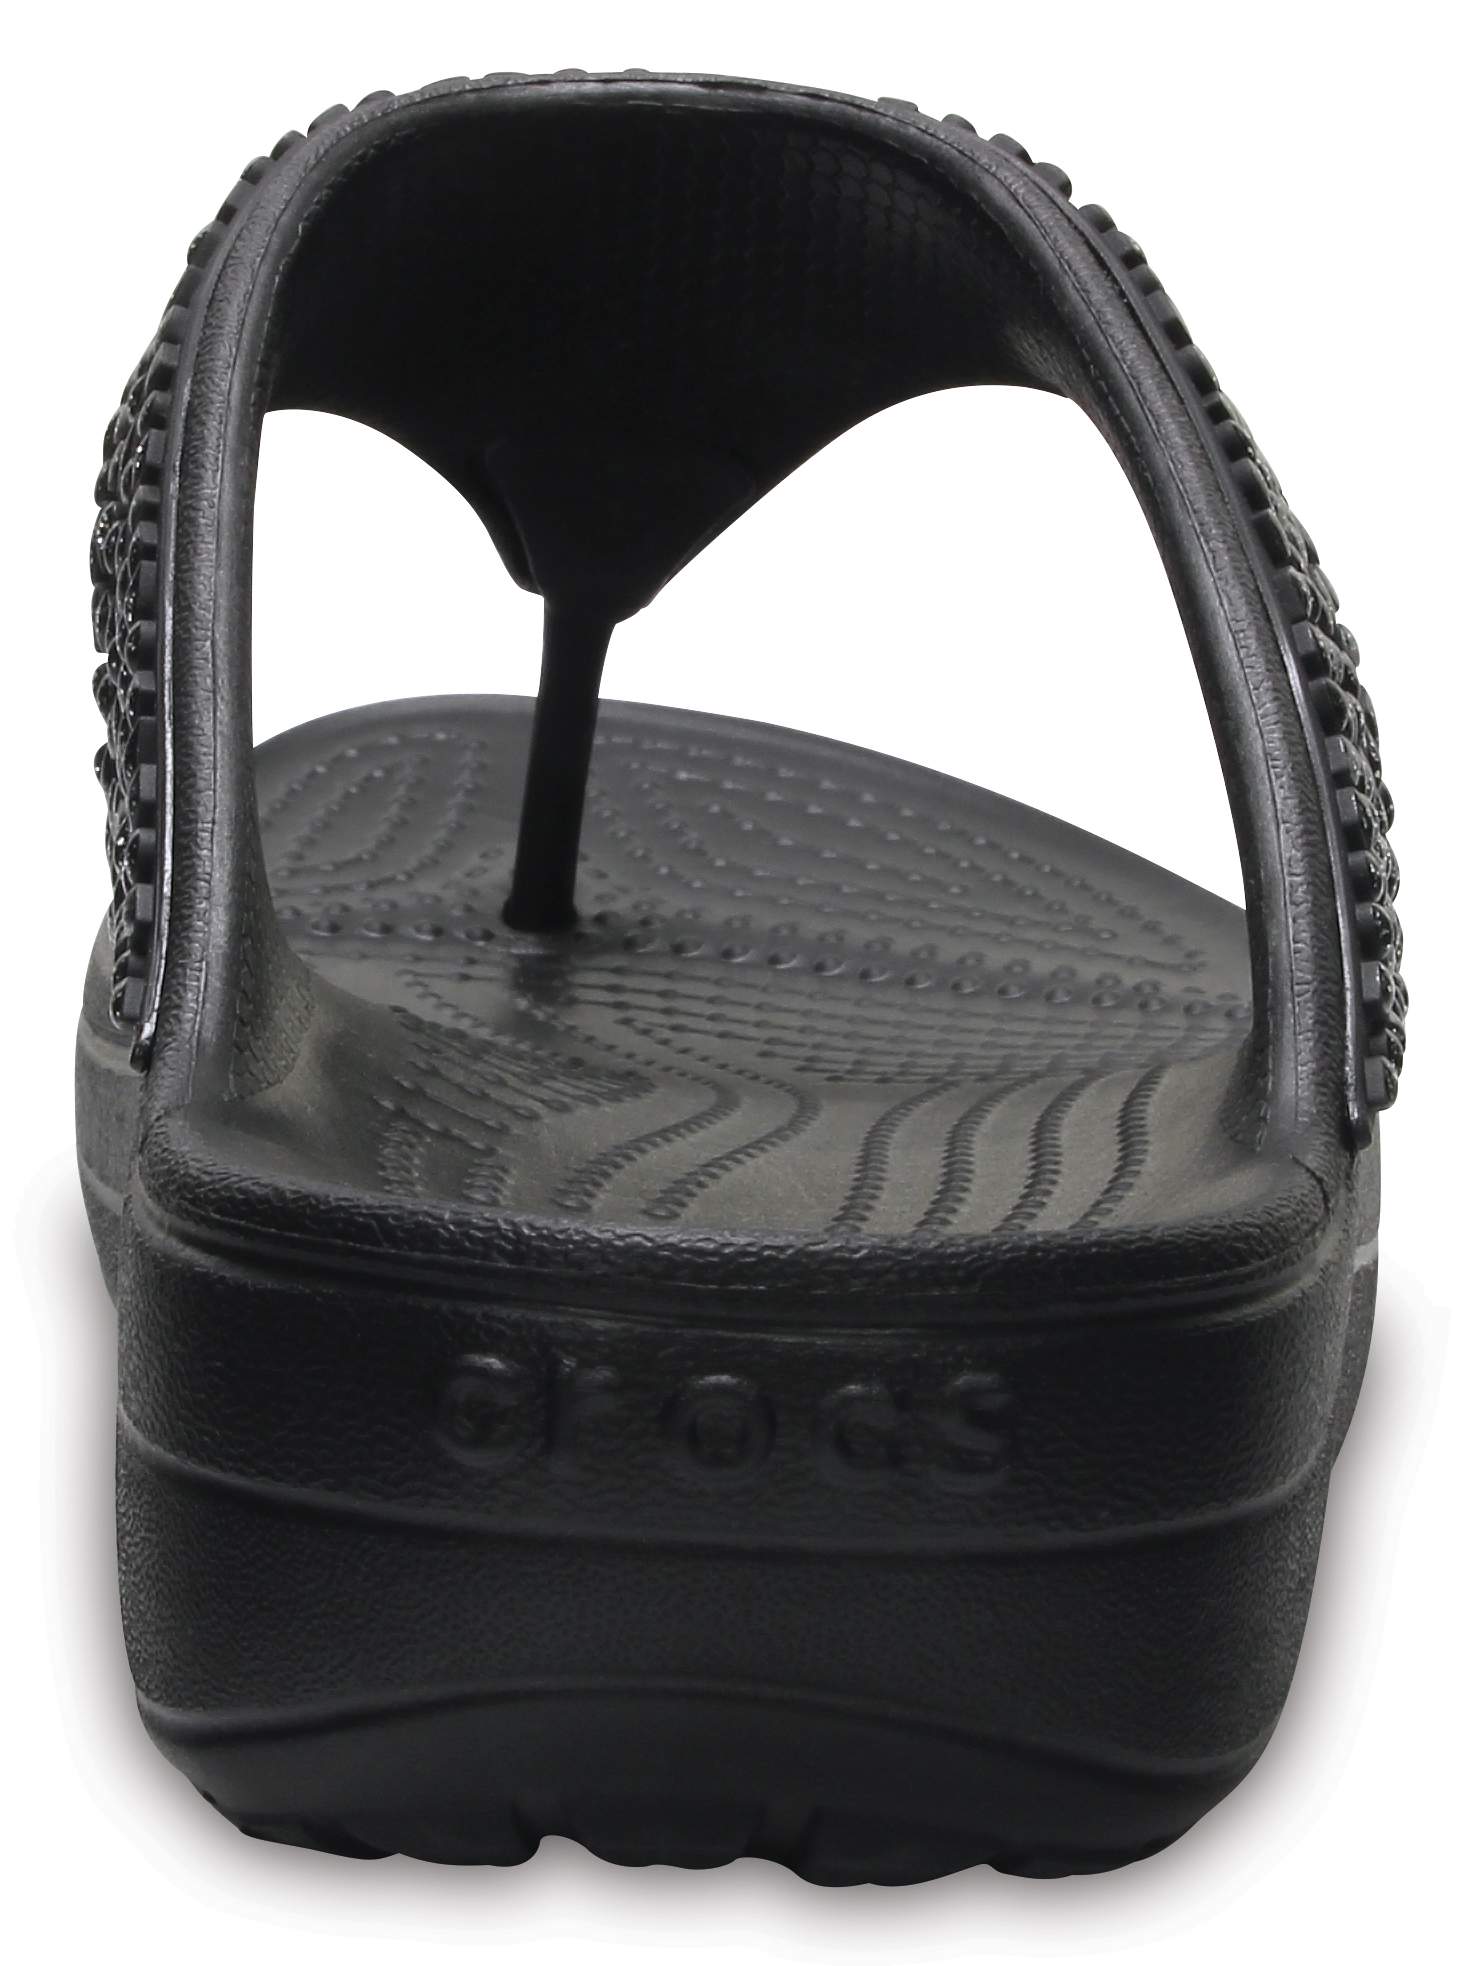 crocs sloane embellished flip flops